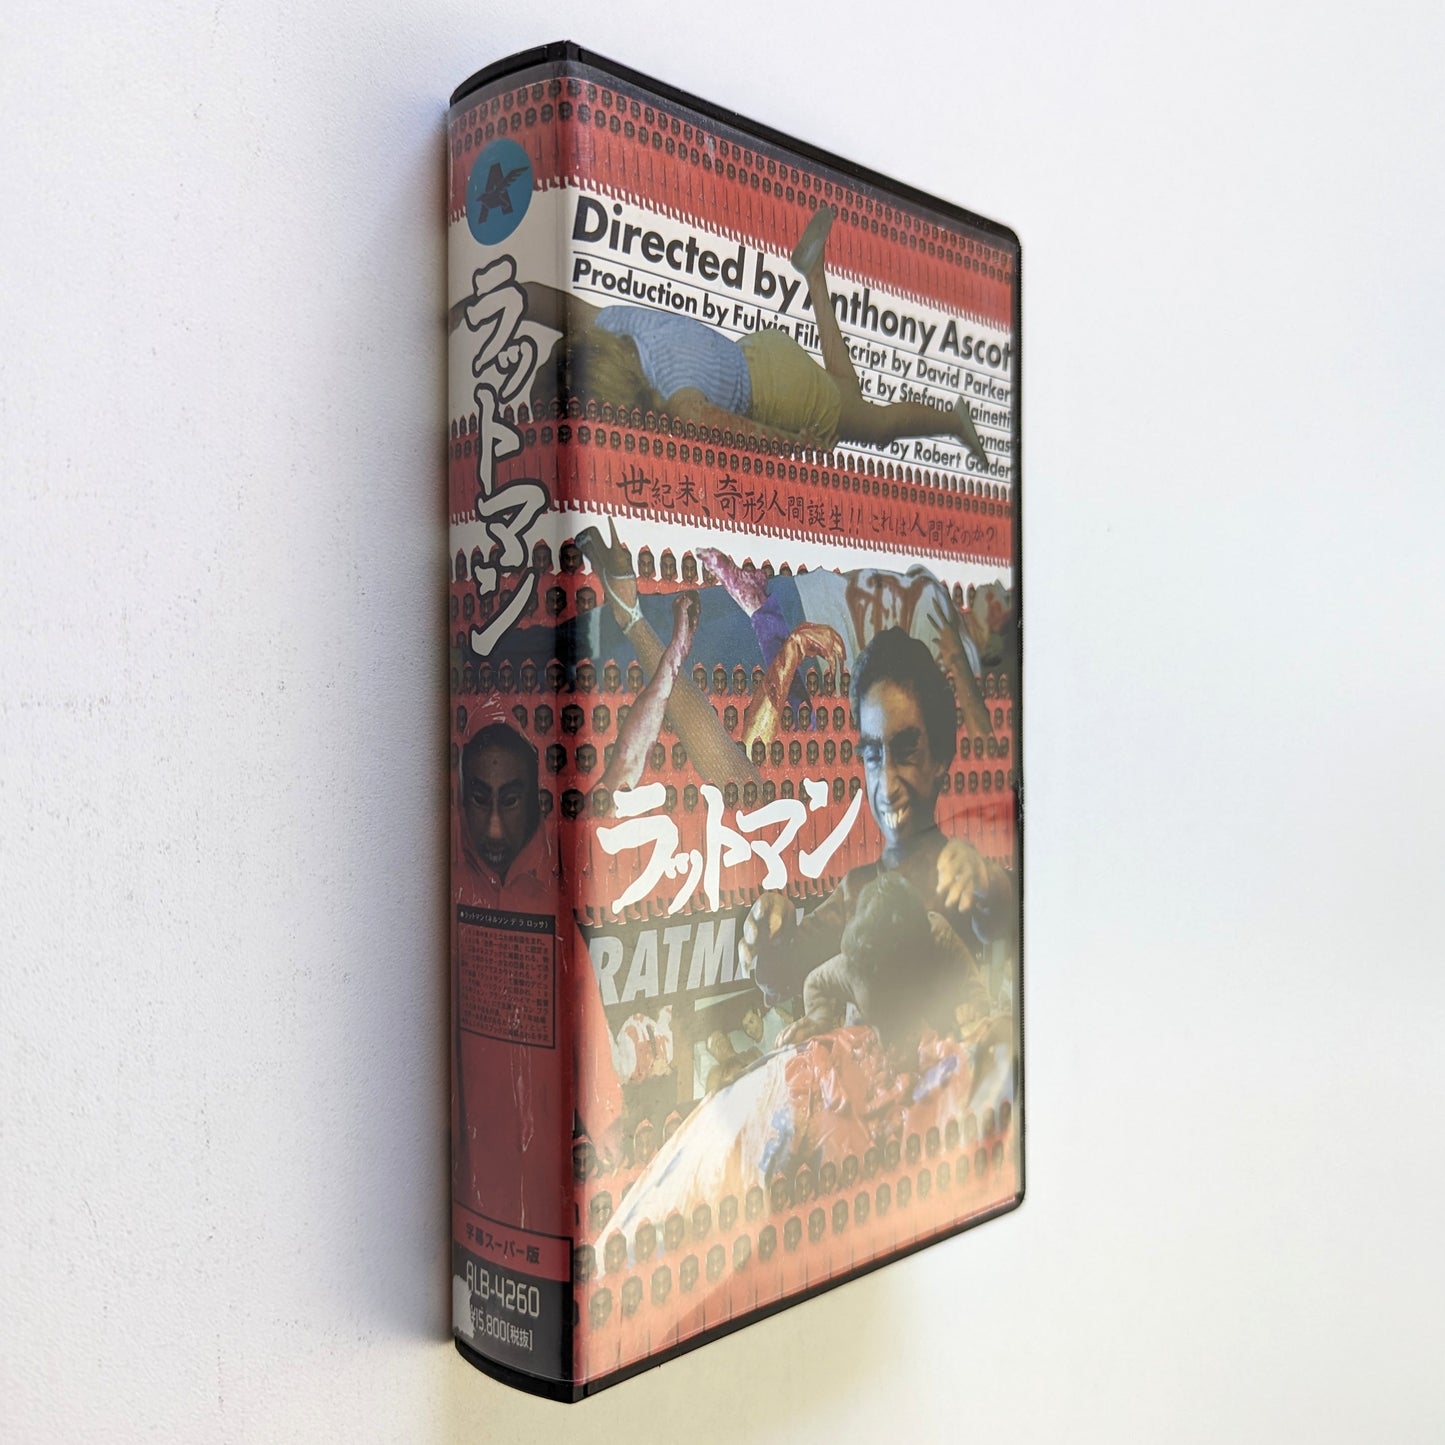 Ratman (1988) Japanese VHS